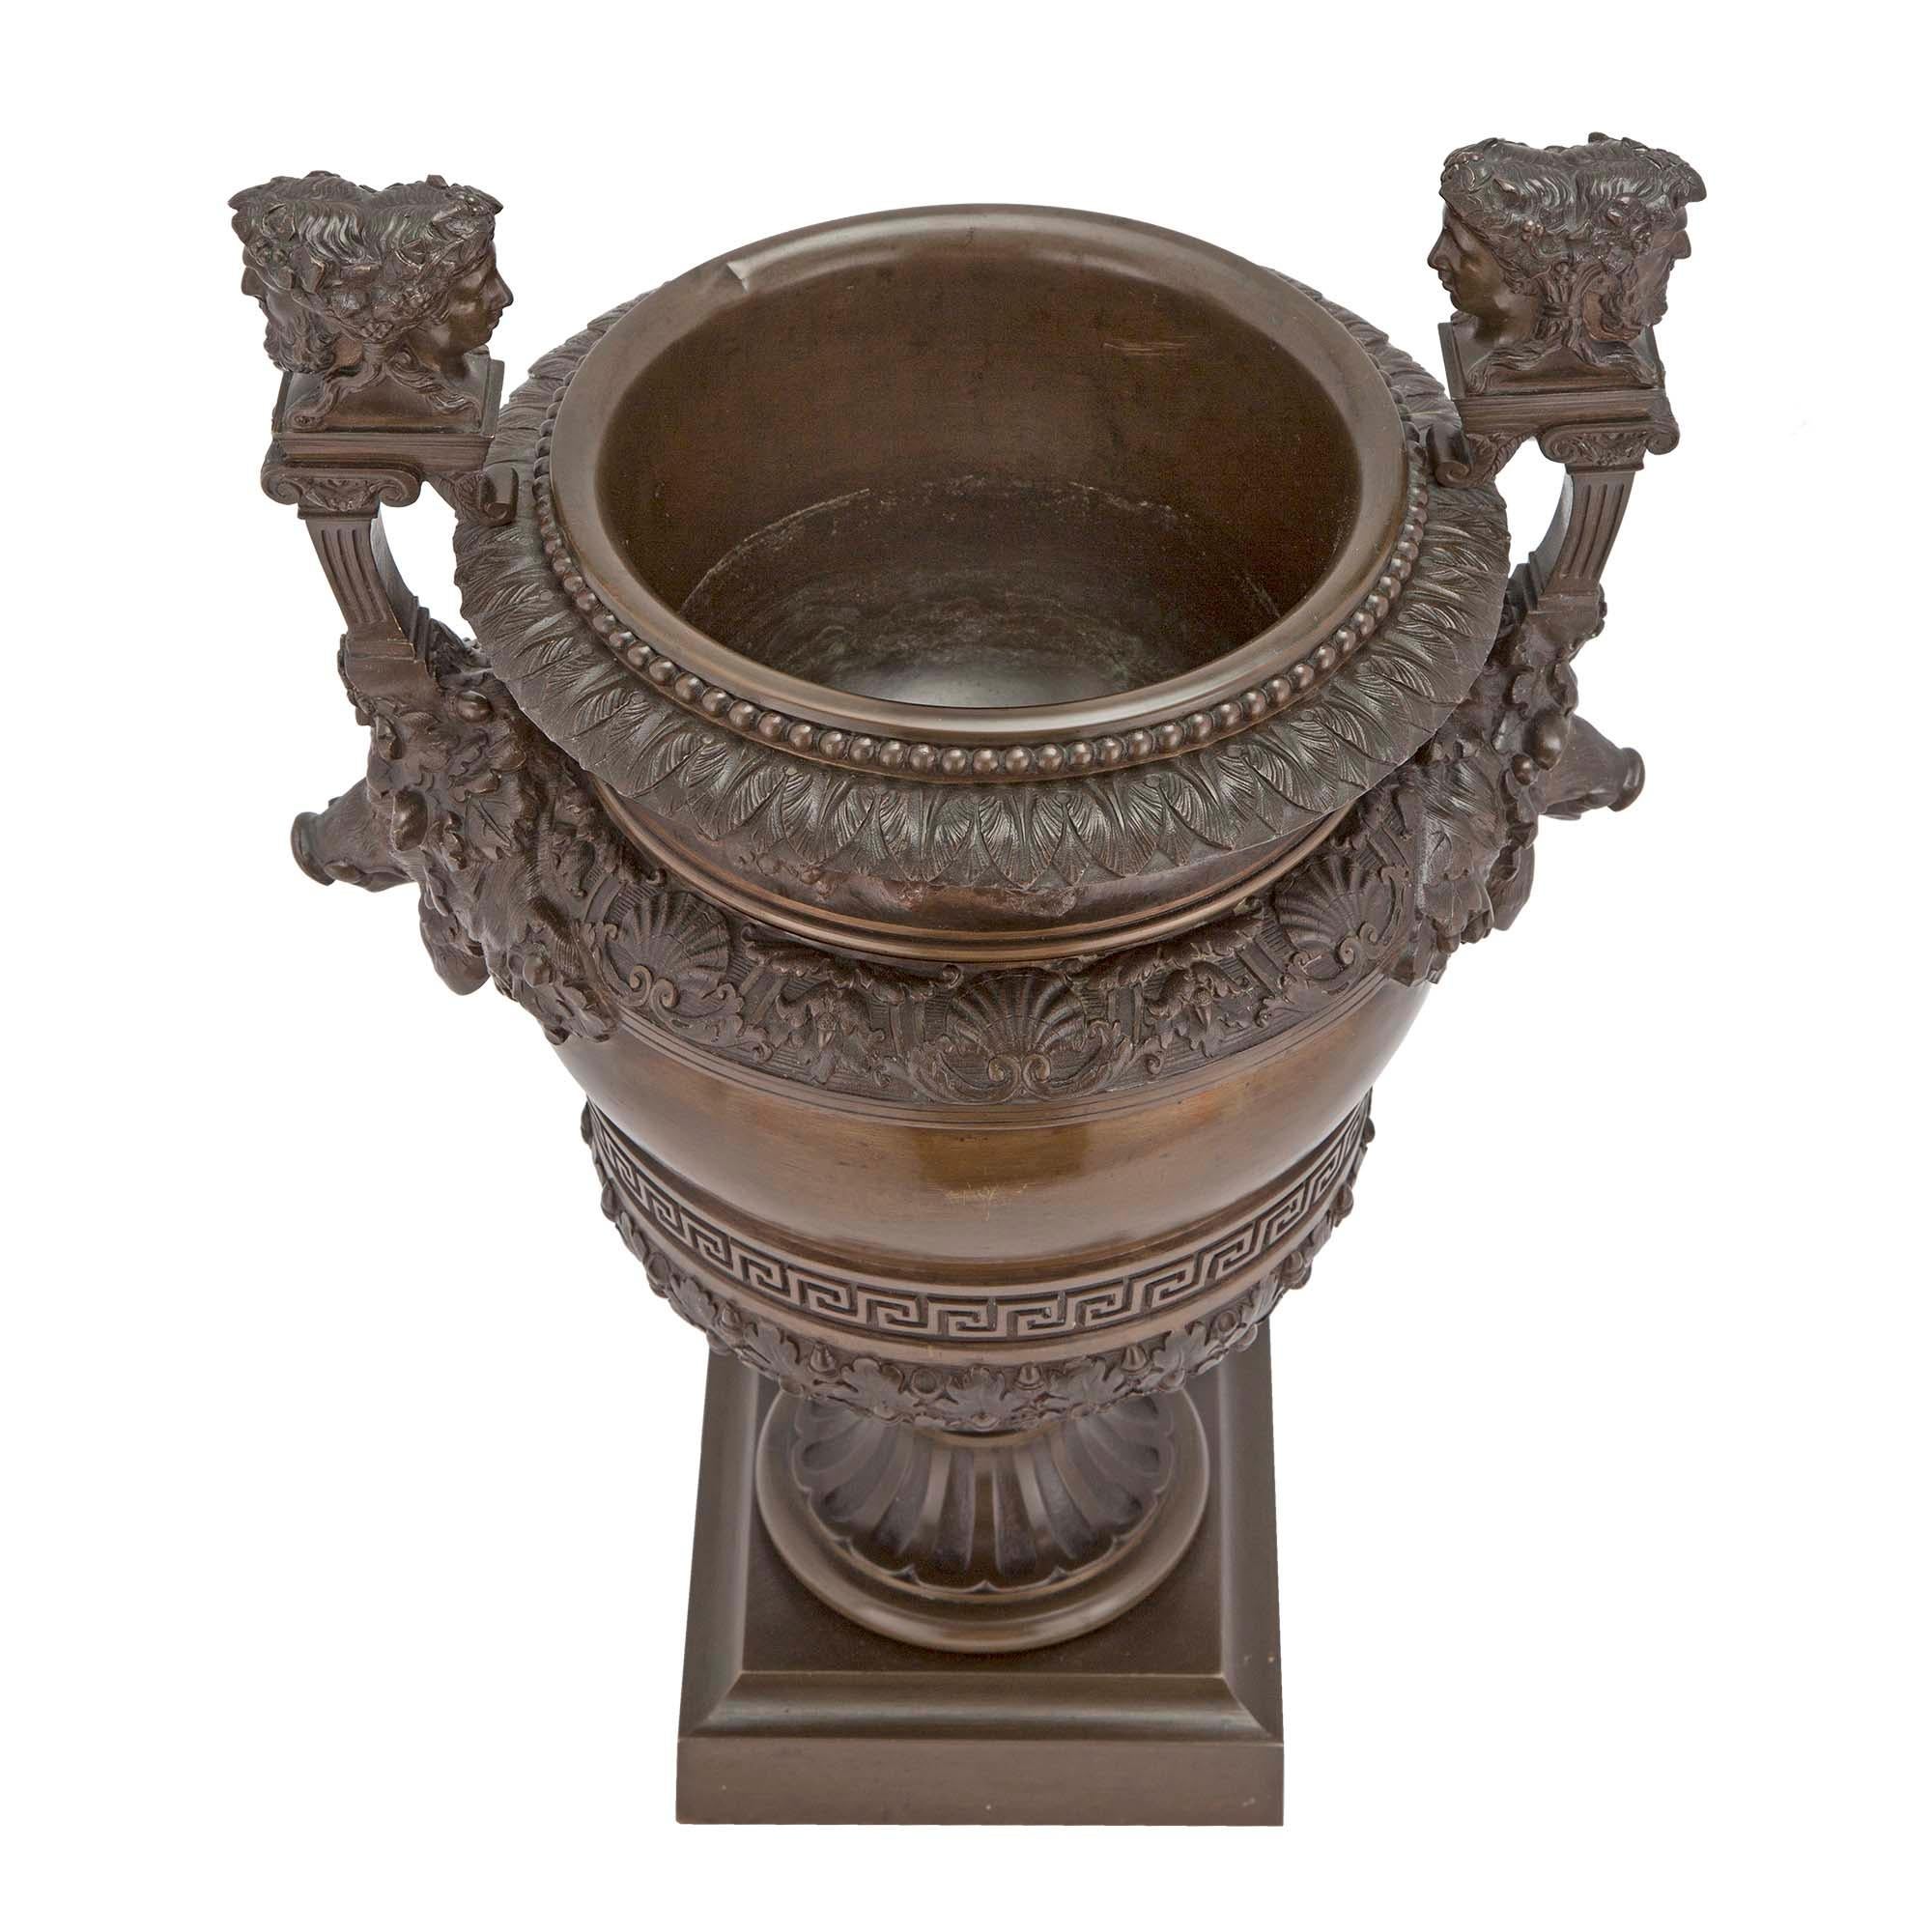 Une belle urne française du 19ème siècle en bronze patiné de la période Grand Tour. L'urne est surélevée par une base carrée mouchetée sous un piédestal à socle cannelé. Le corps est décoré de motifs feuillus richement ciselés et d'un étonnant motif